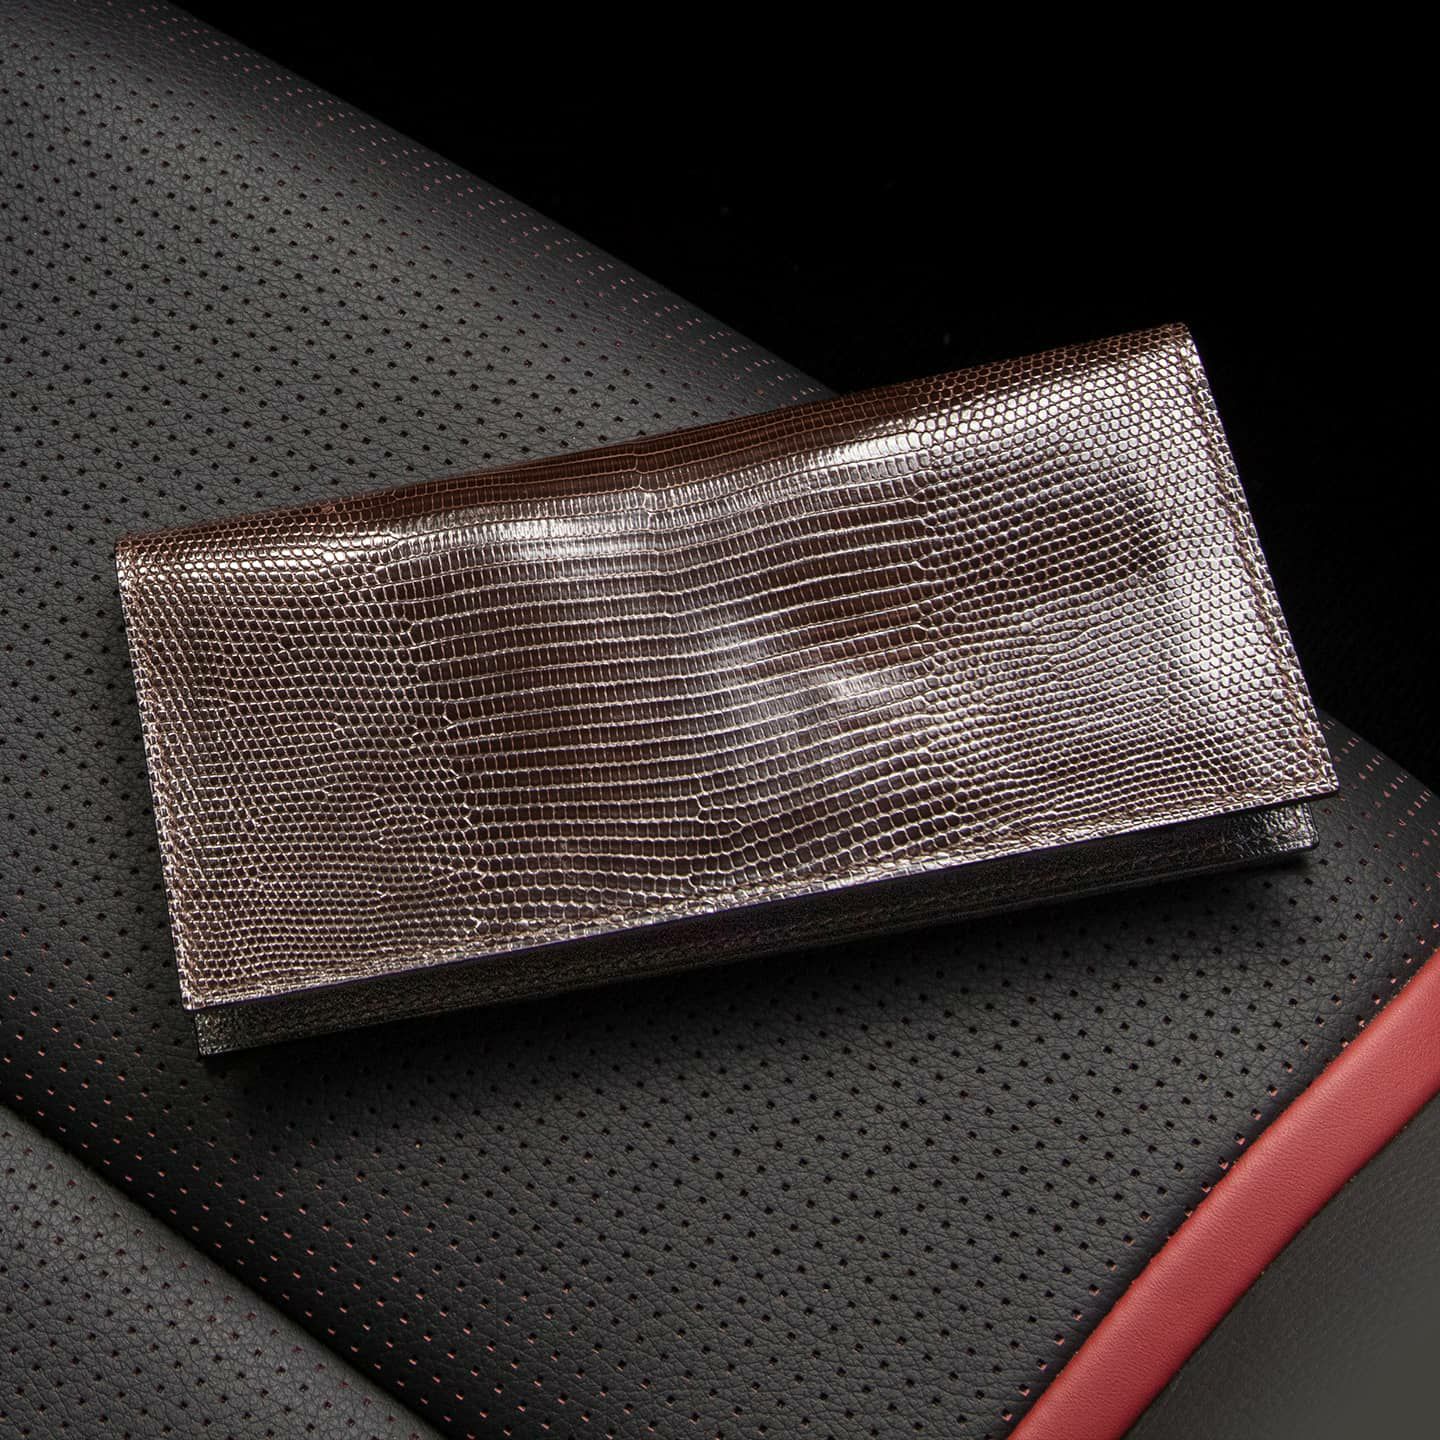 リザード 薄型長財布 | 大人のバッグ・財布・ 長財布 など拘りの日本製